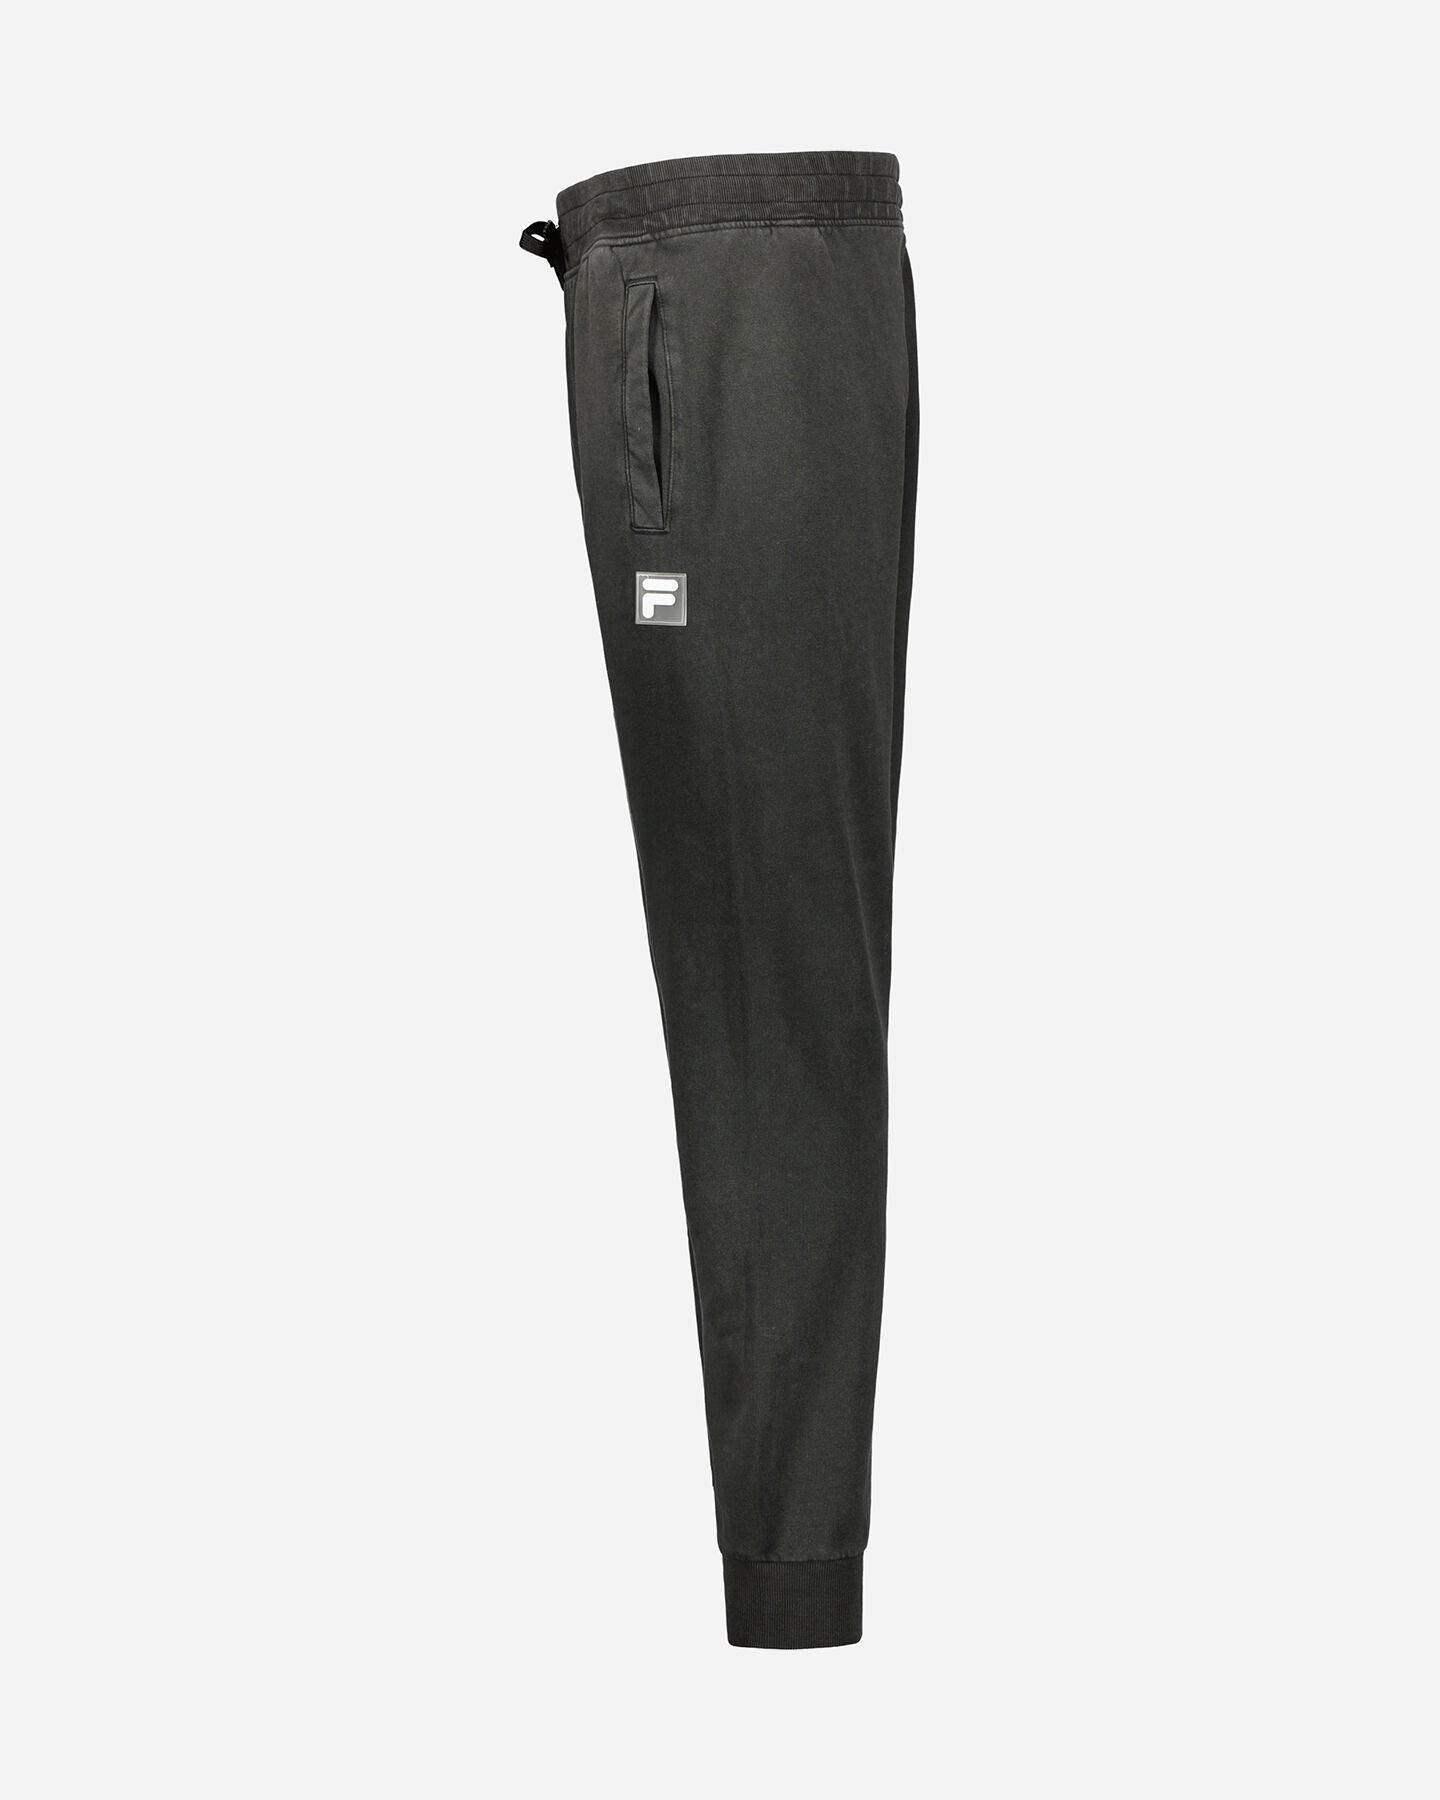  Pantalone FILA TRANSPARENT RUBBER F-BOX PATCH M S4119492|050|S scatto 1